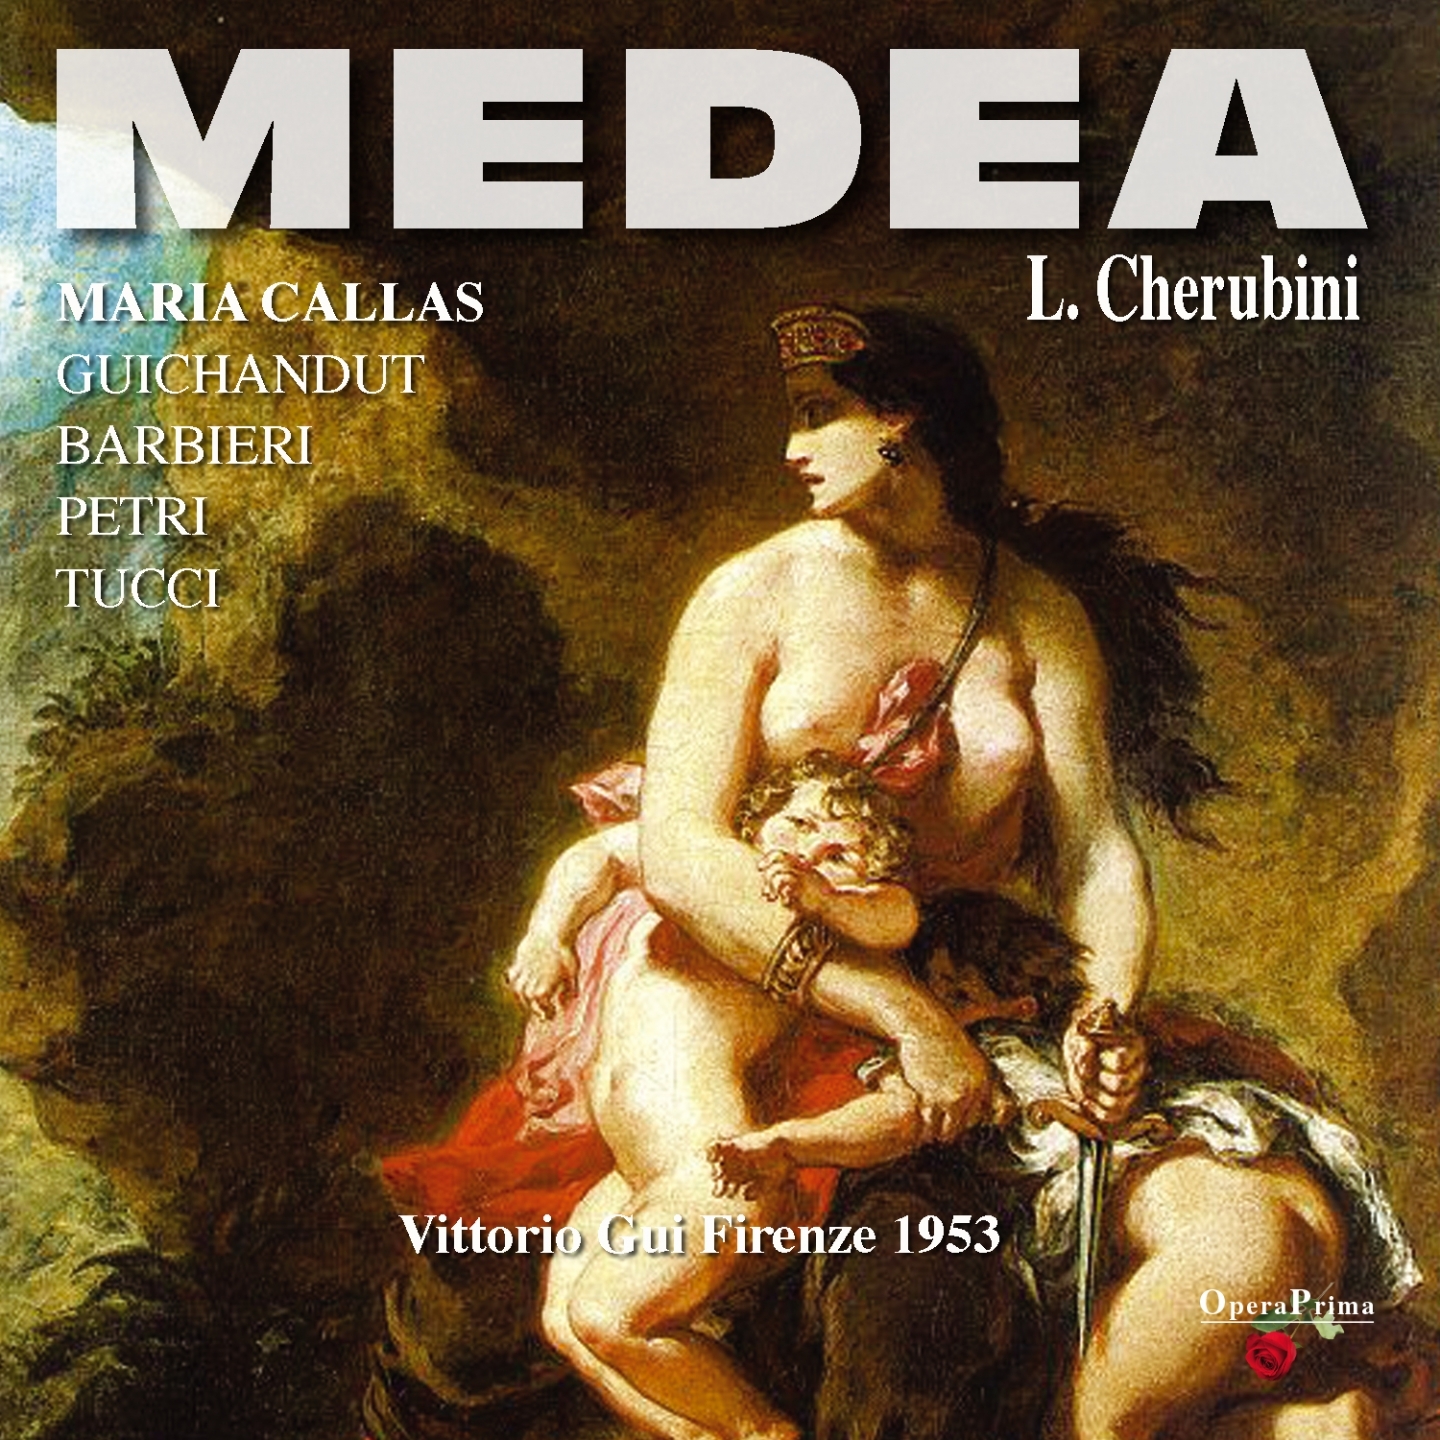 Medea : Act II  " Creonite a me solo un giorno da?"